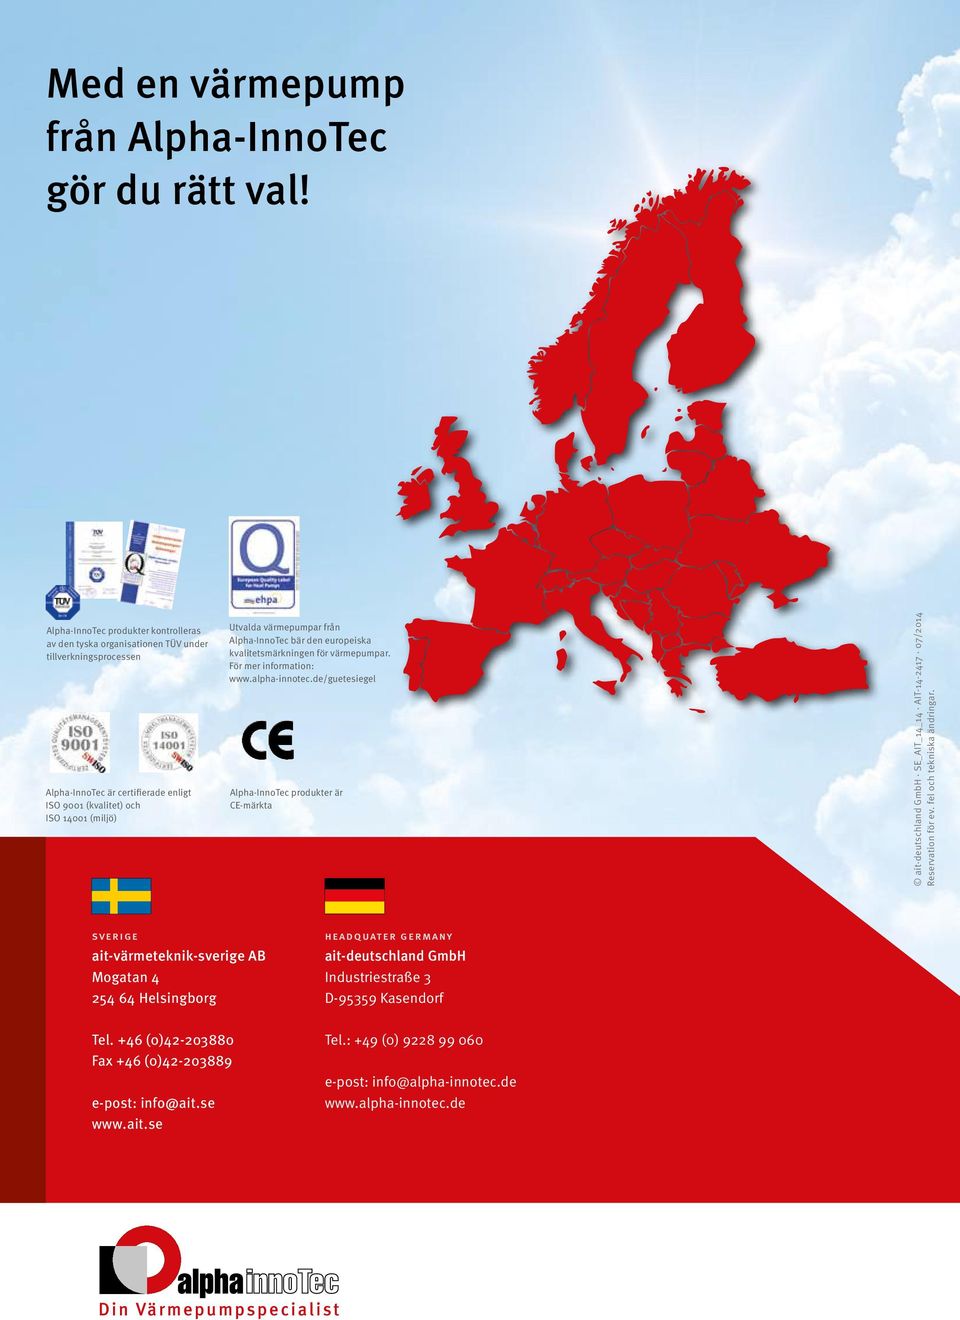 från Alpha-InnoTec bär den europeiska kvalitetsmärkningen för värmepumpar. För mer information: www.alpha-innotec.